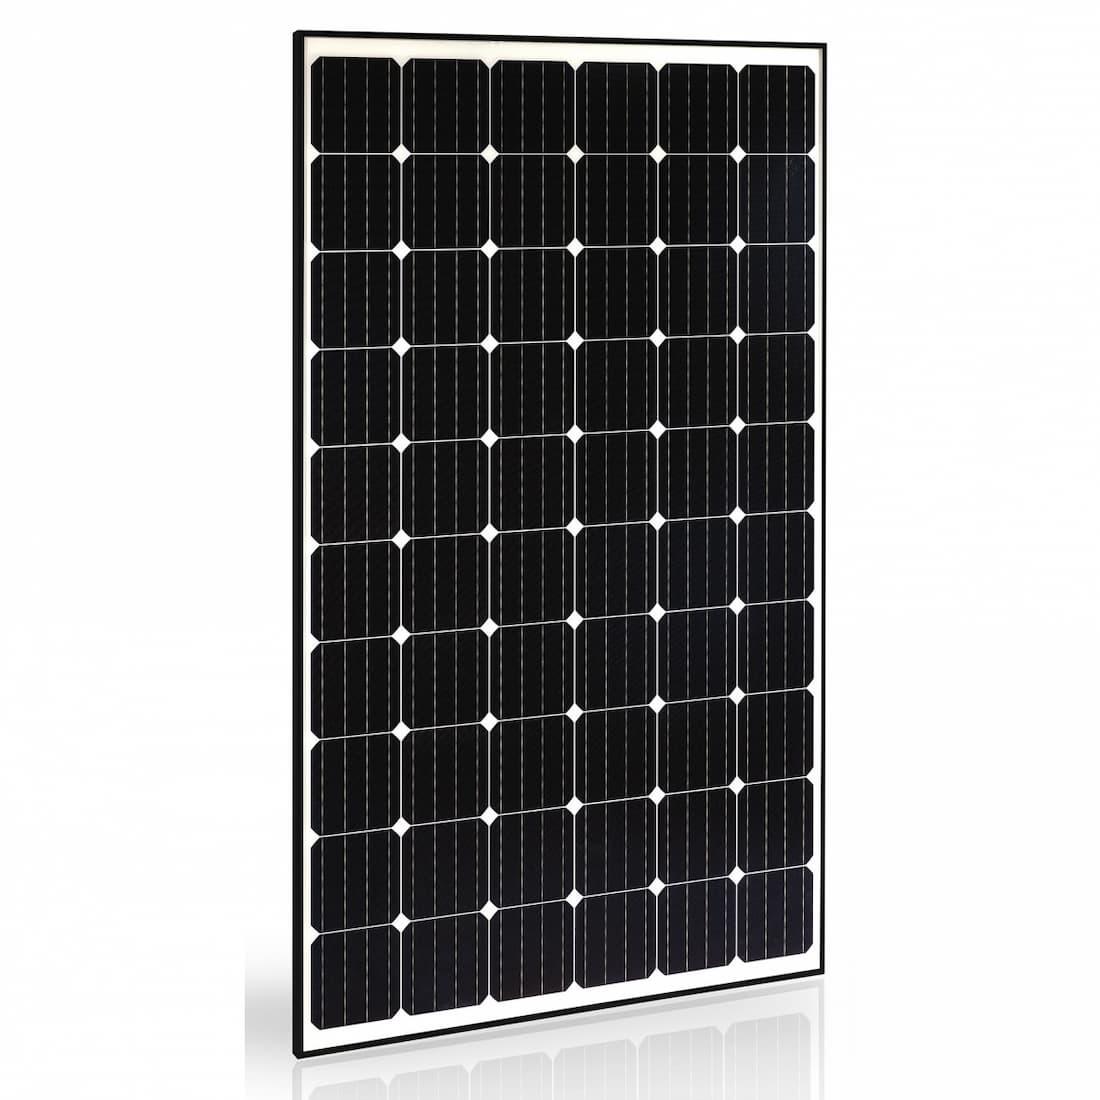 Sistemi fotovoltaici con back-contact, soluzioni Trienergia